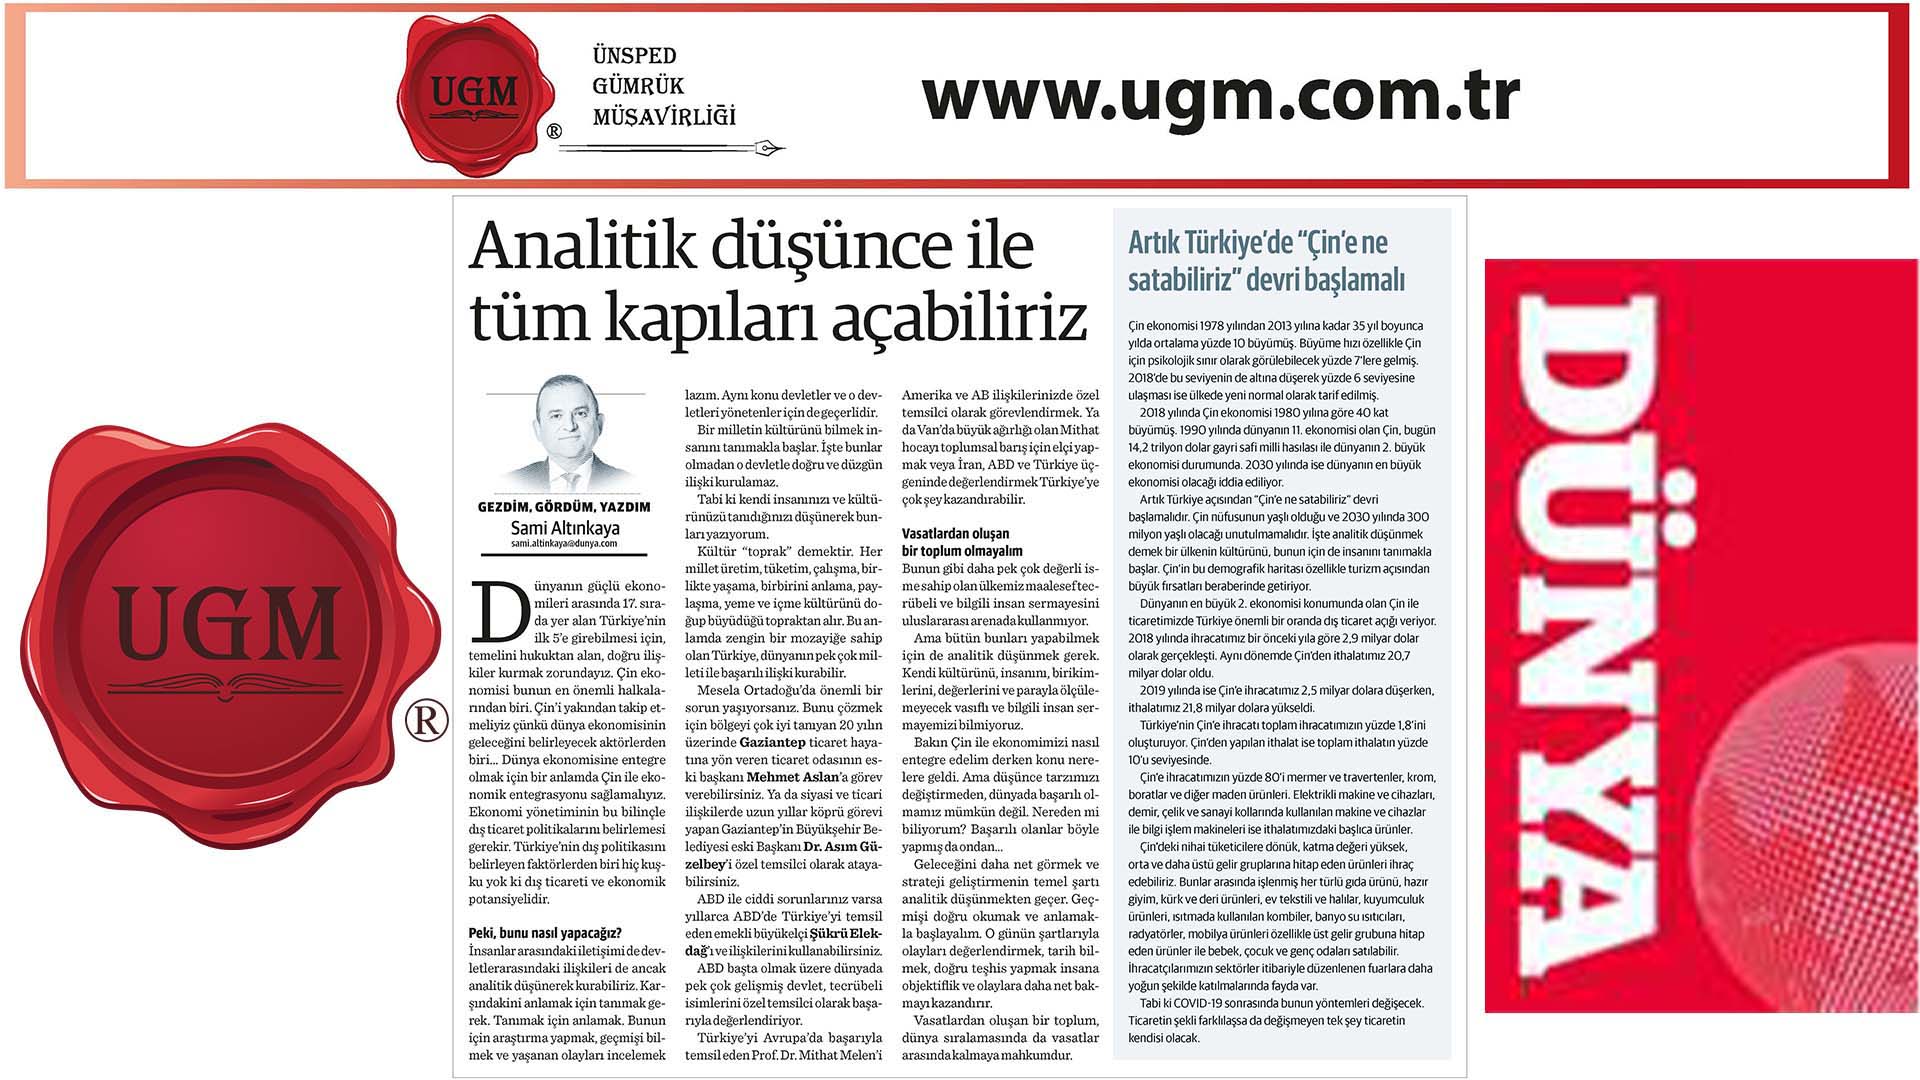 UGM Kurumsal İletişim Direktörümüz Sami Altınkaya'nın "Analitik düşünce ile tüm kapıları açabiliriz" başlıklı yazısı, 01.06.2020 tarihinde Dünya Gazetesi'nde yayınlandı.